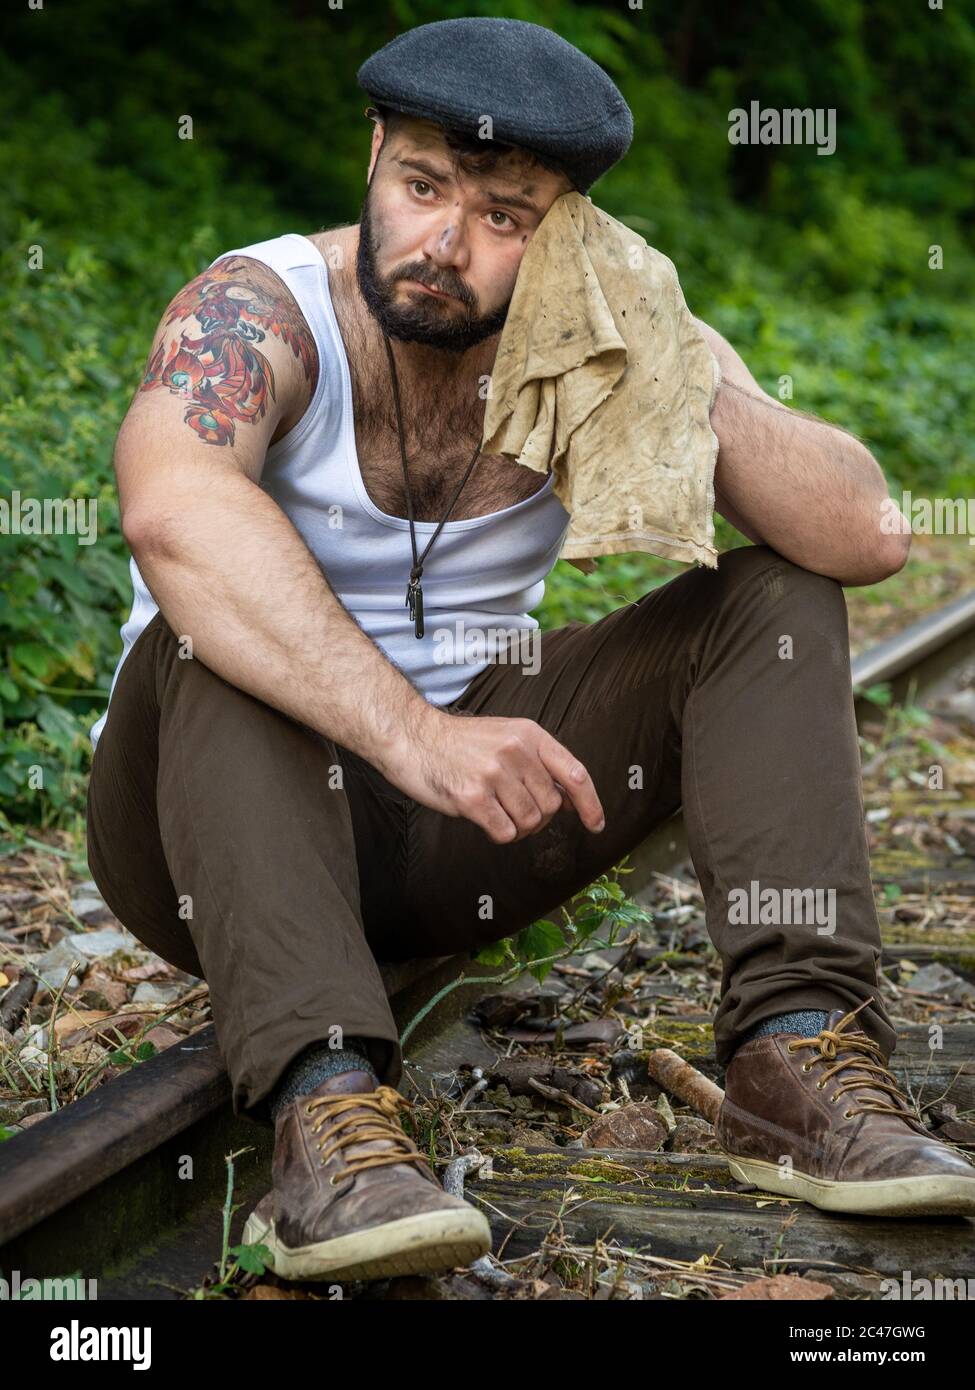 Jeune homme barbu français, avec des tatouages et des taches de charbon de bois sur sa peau, pris à l'extérieur sur une voie ferrée désutilisée avec lumière naturelle à Paris, France Banque D'Images